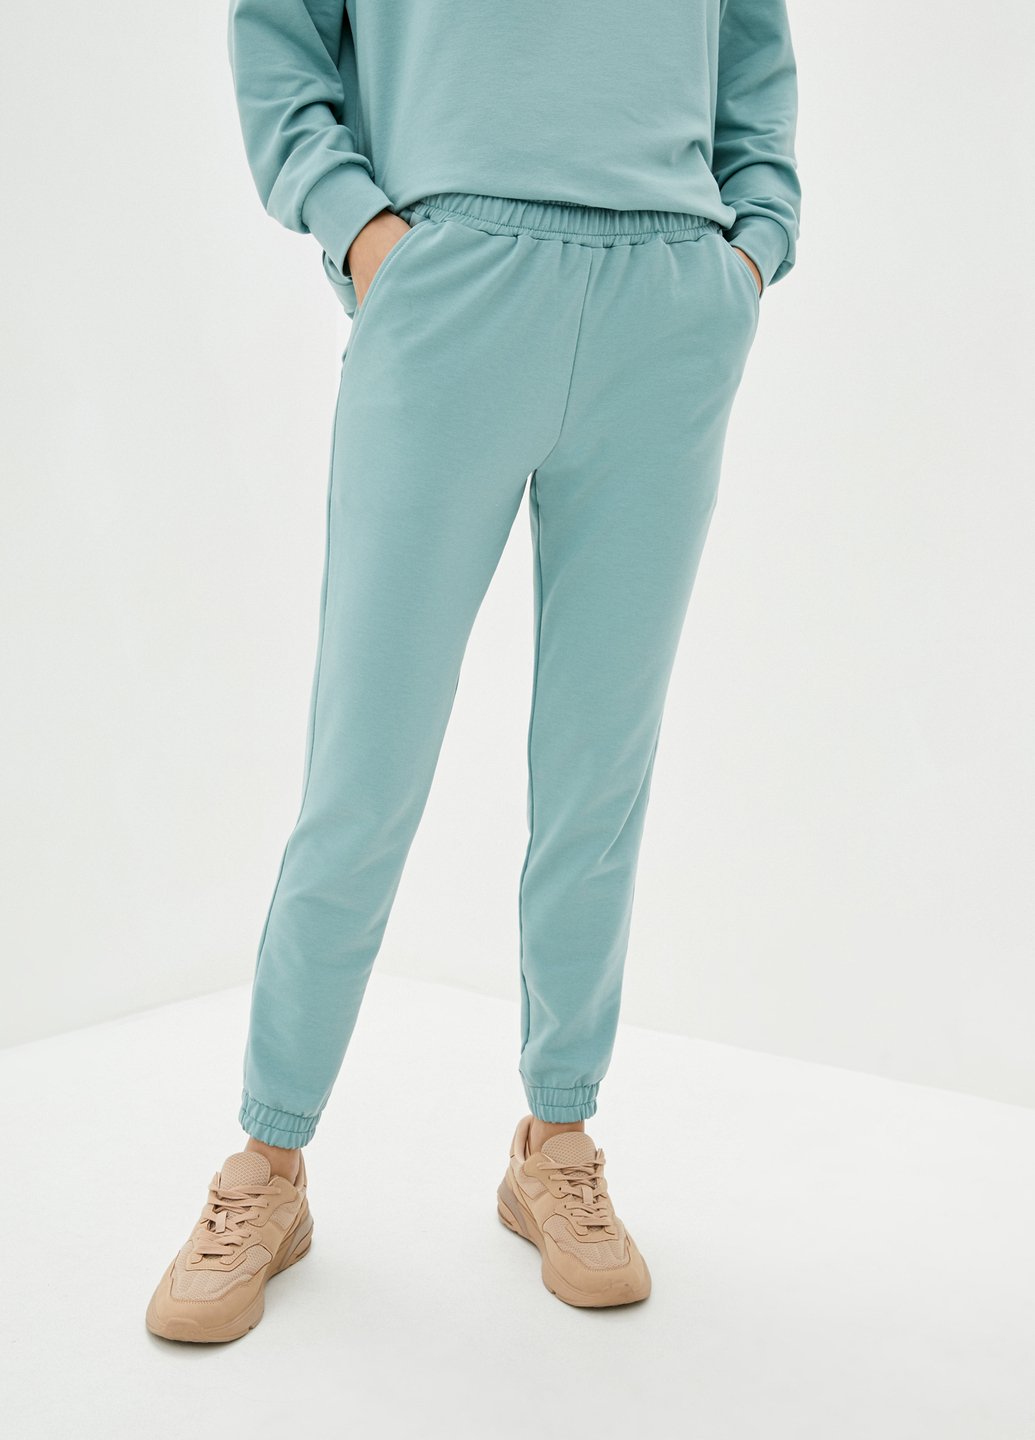 Купить Спортивные штаны женские Merlini Латина 600000016 - Зелёный, 42-44 в интернет-магазине